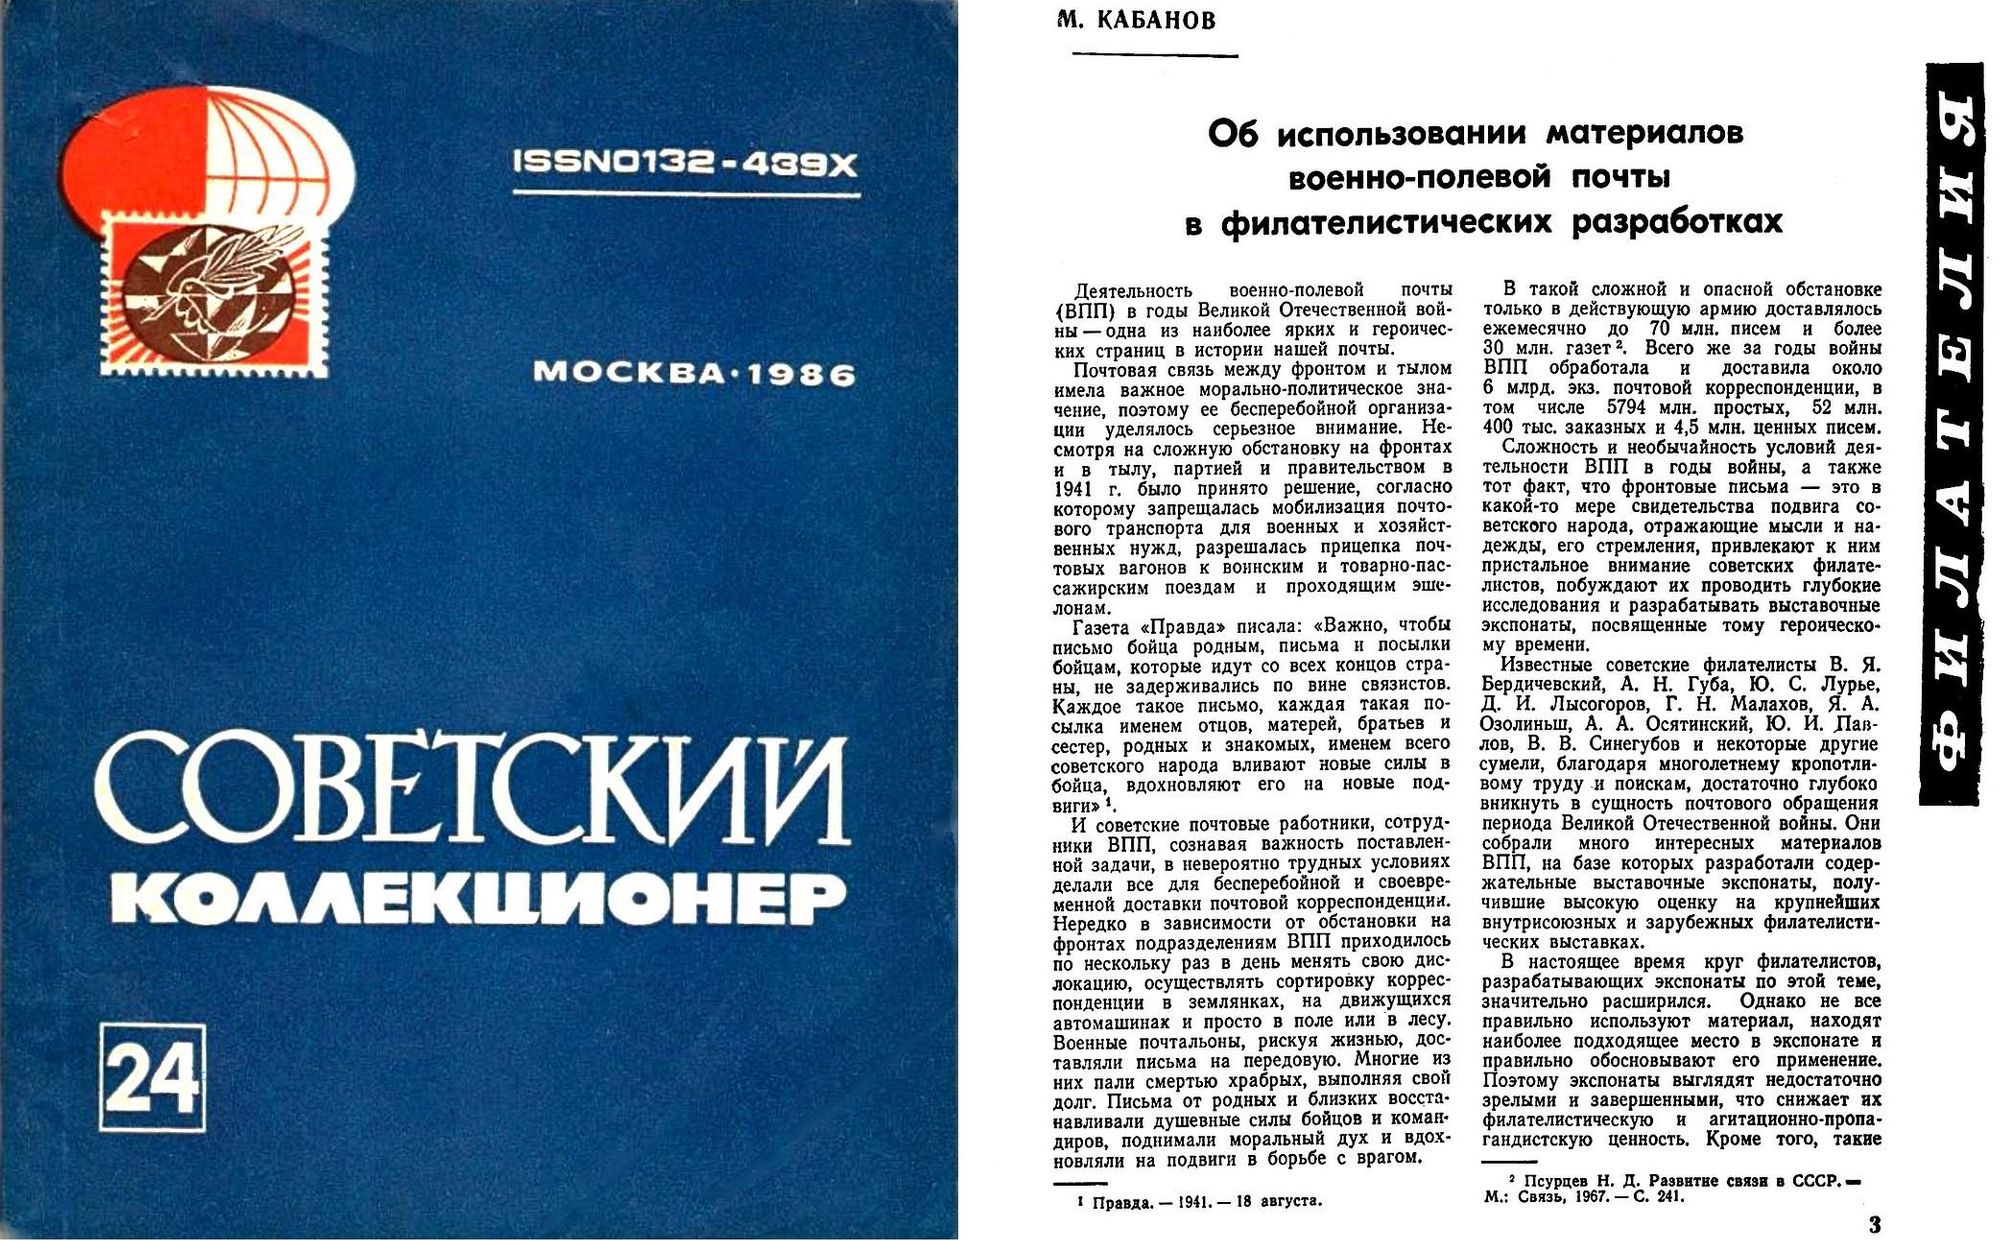 Первоисточник: Кабанов М. (1986) Об использовании материалов военно-полевой почты в филателистических разработках